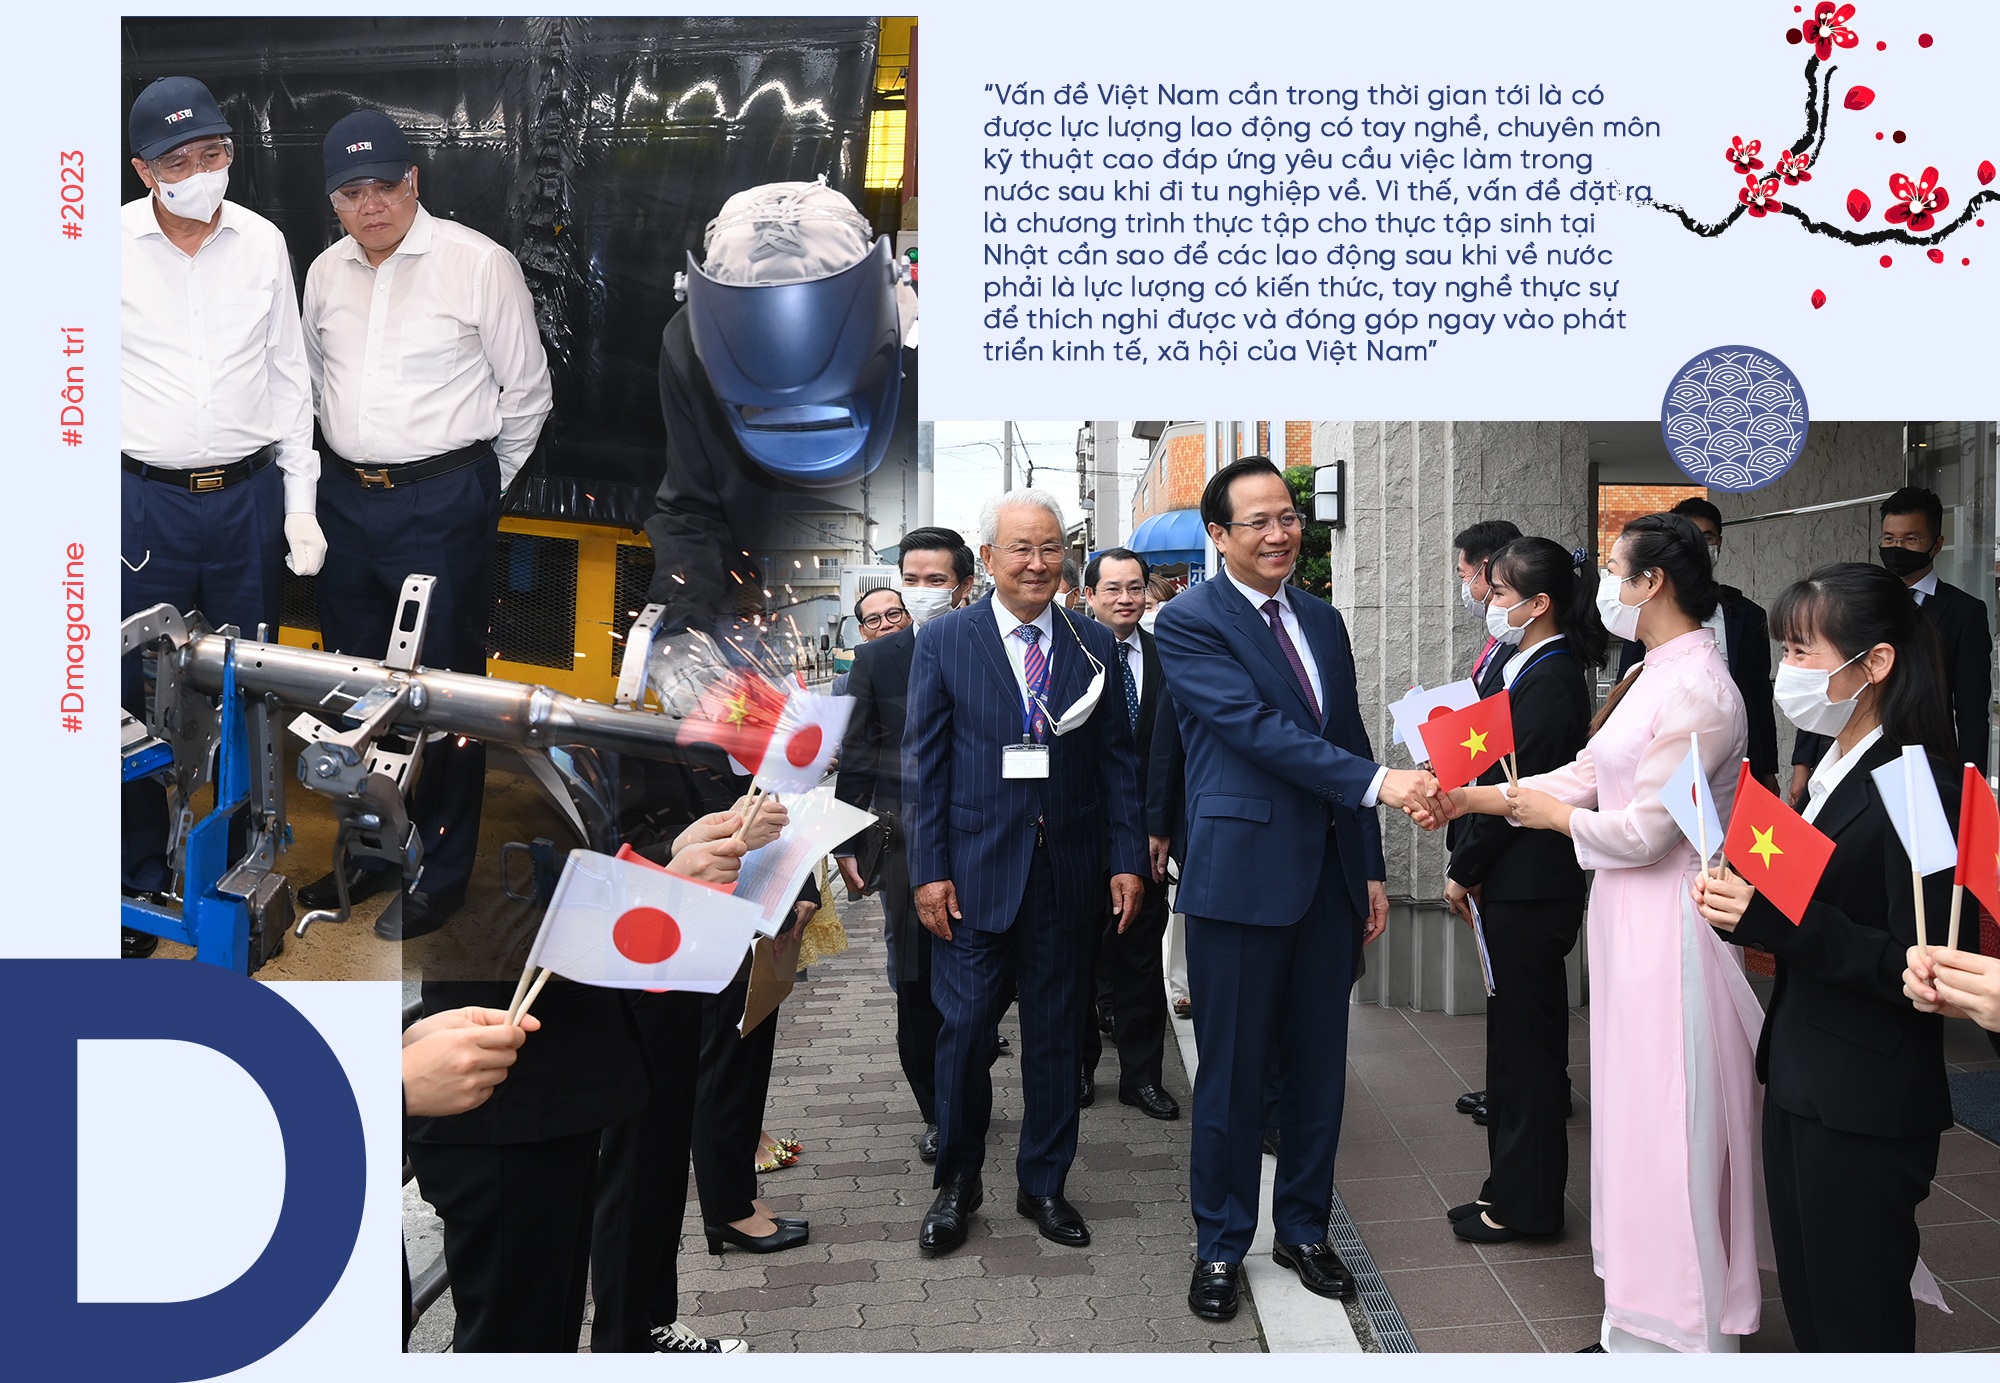 Chuyến đi Nhật của Bộ trưởng và những cơ hội mở ra với lao động Việt - 4